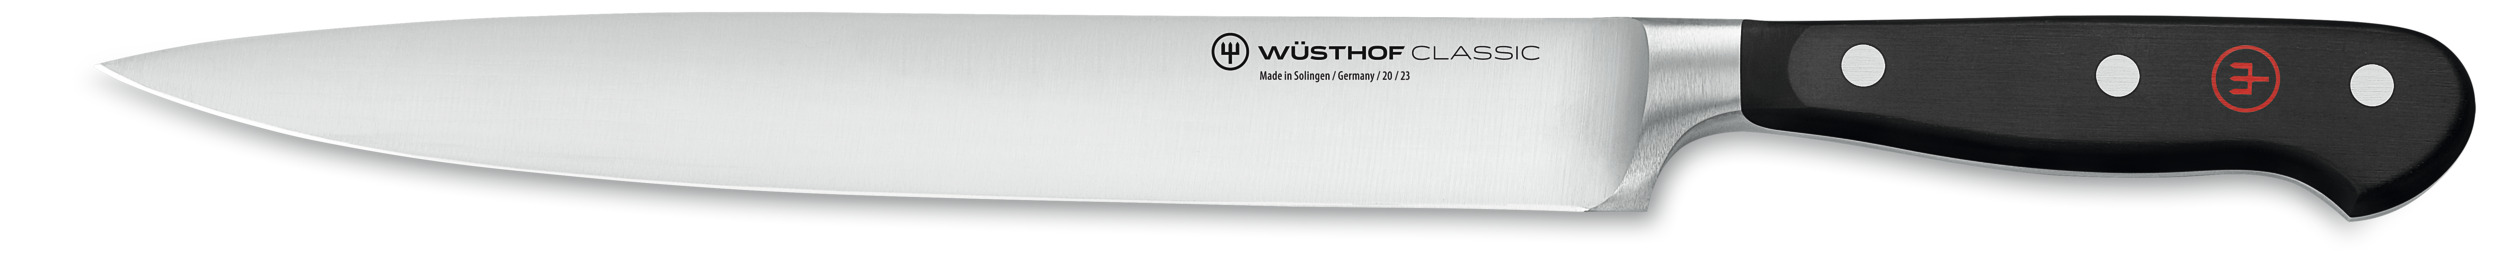 Wüsthof Classic Schinkenmesser 23 cm